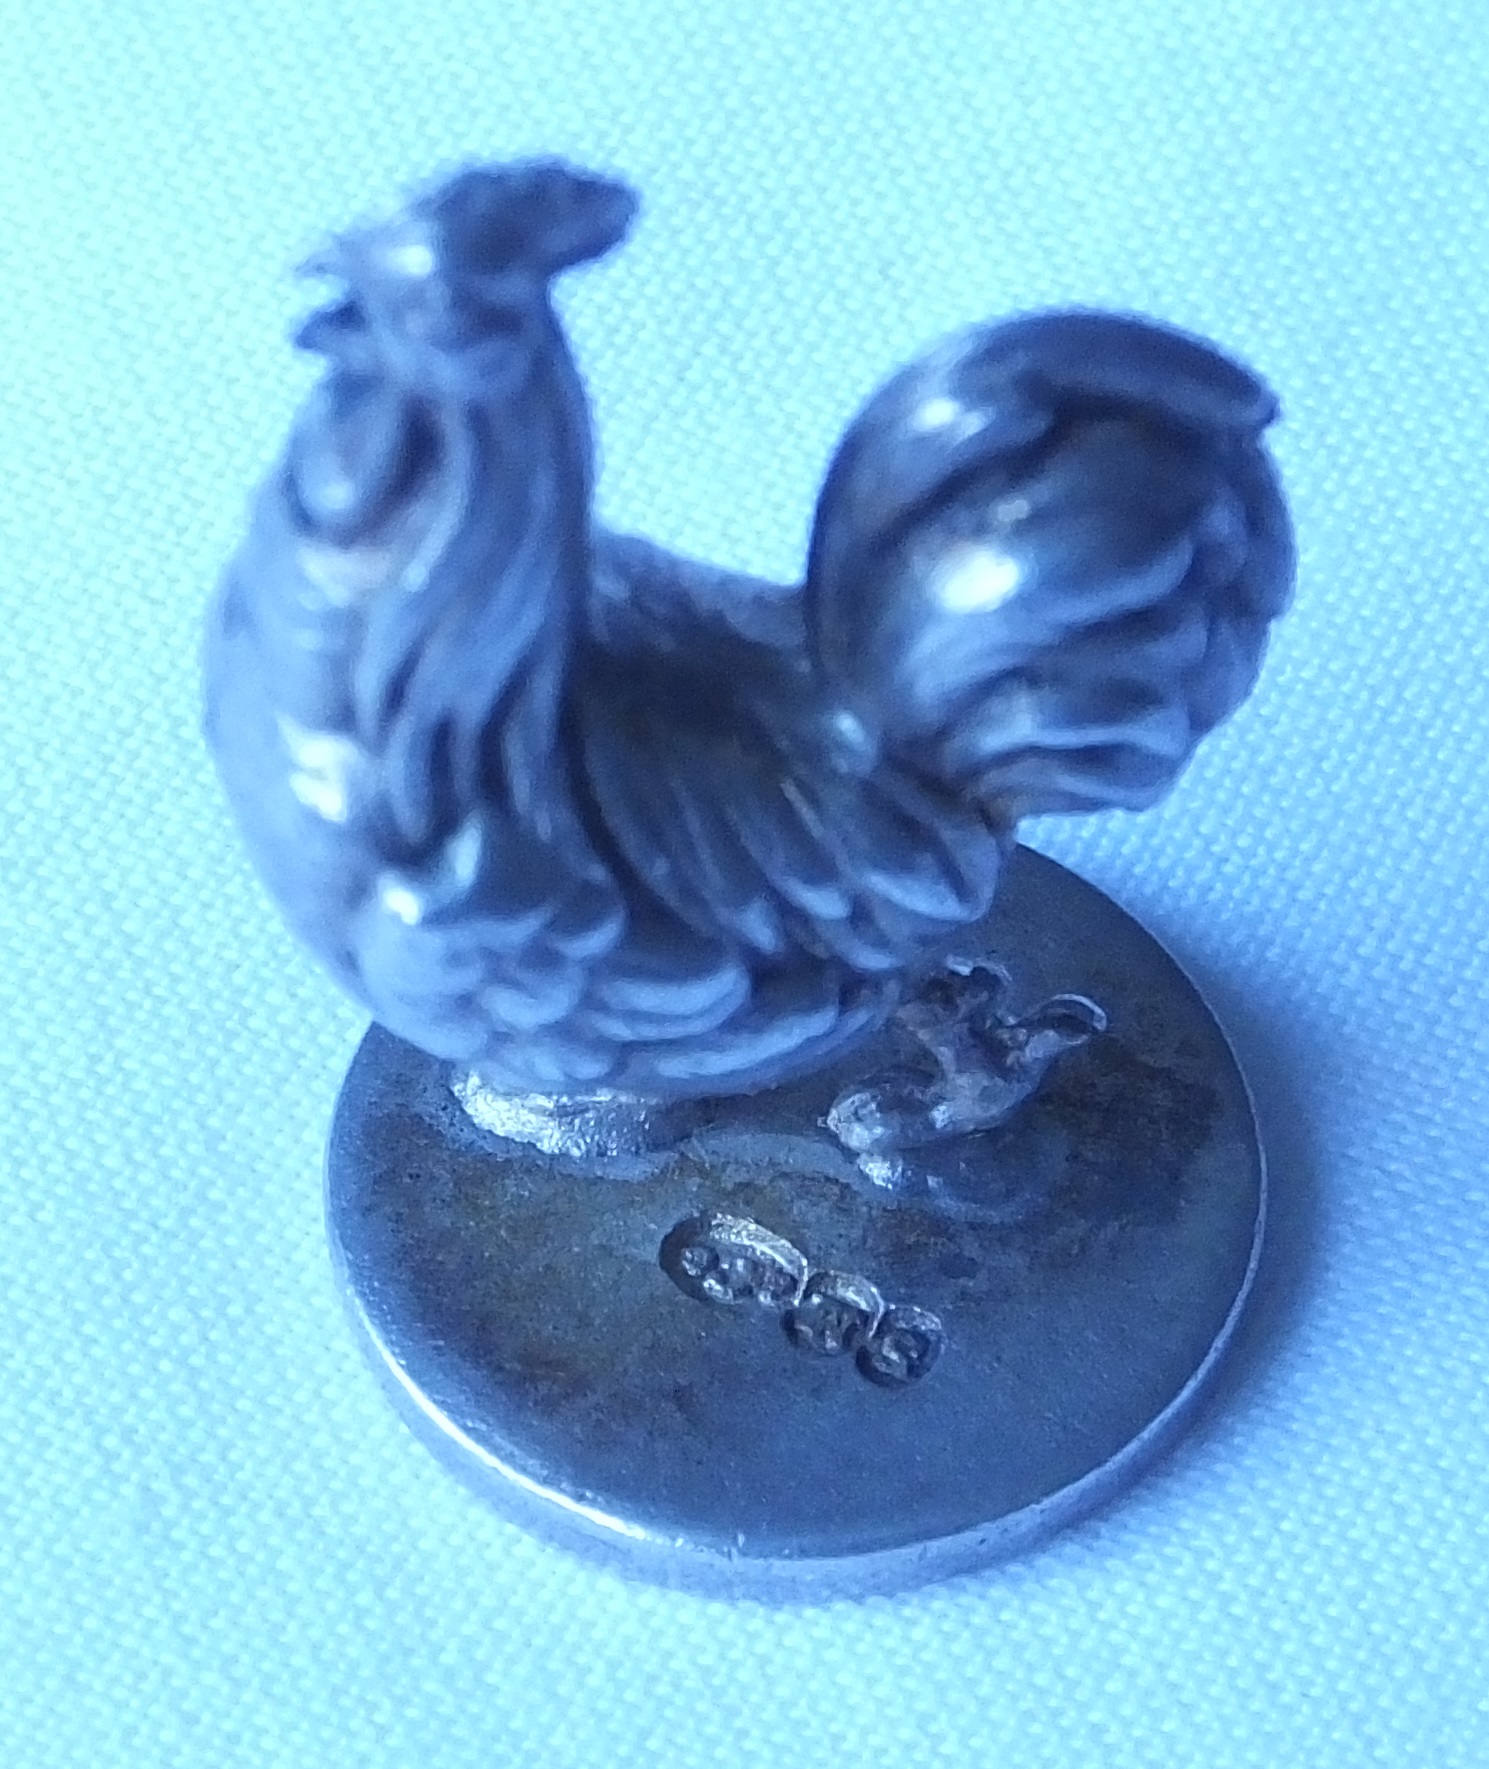 Sampson Mordan Solid Silver Desk Seal Cast As A Cockerel - Image 4 of 4